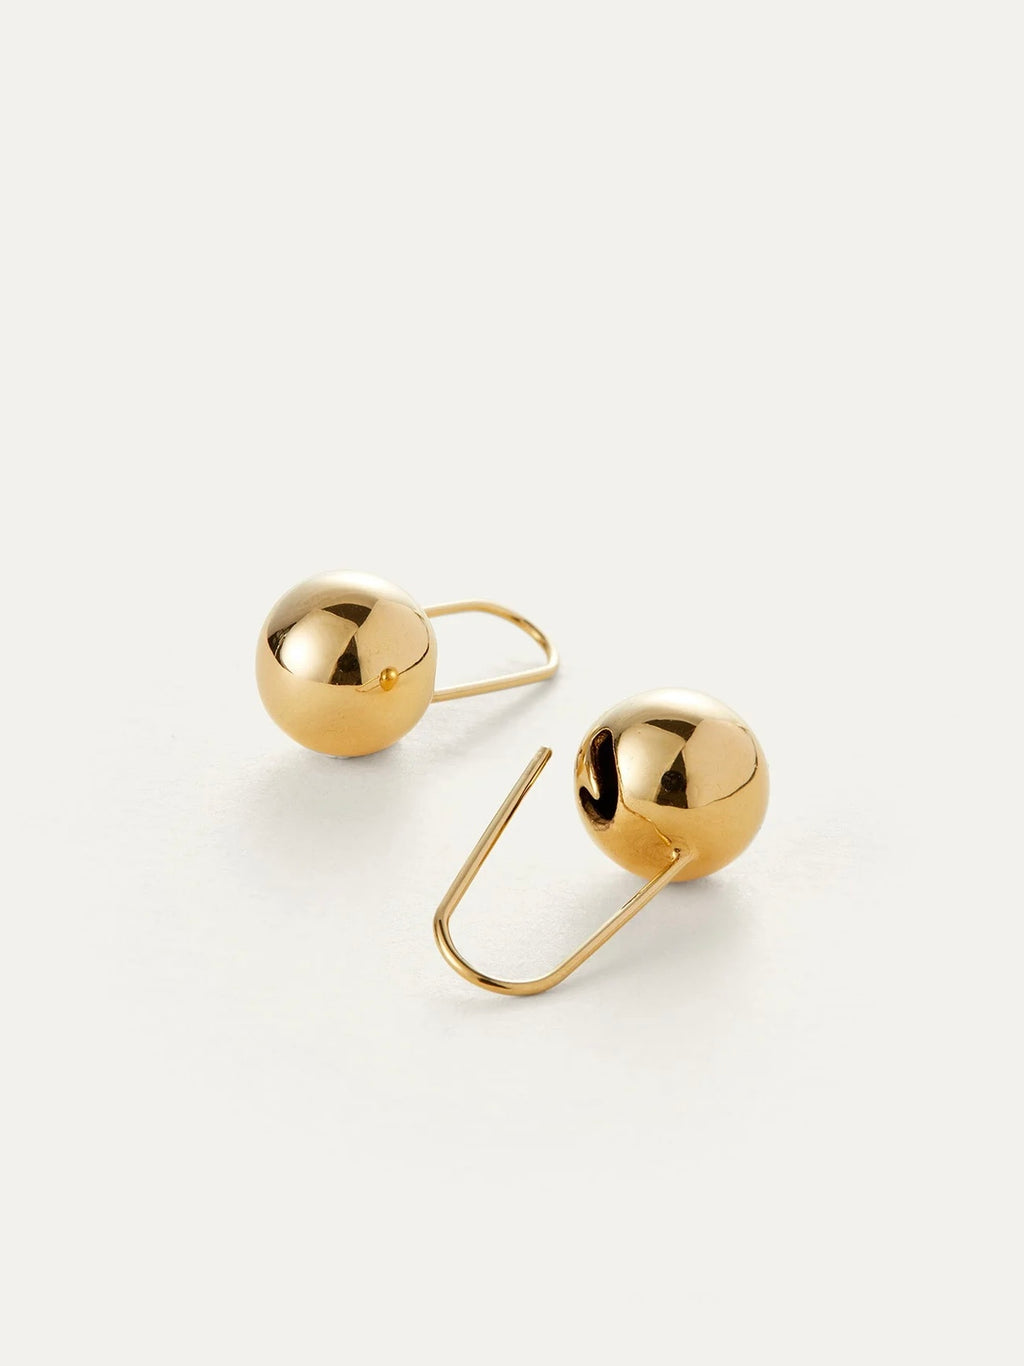 Celeste Earrings in High Polish Gold